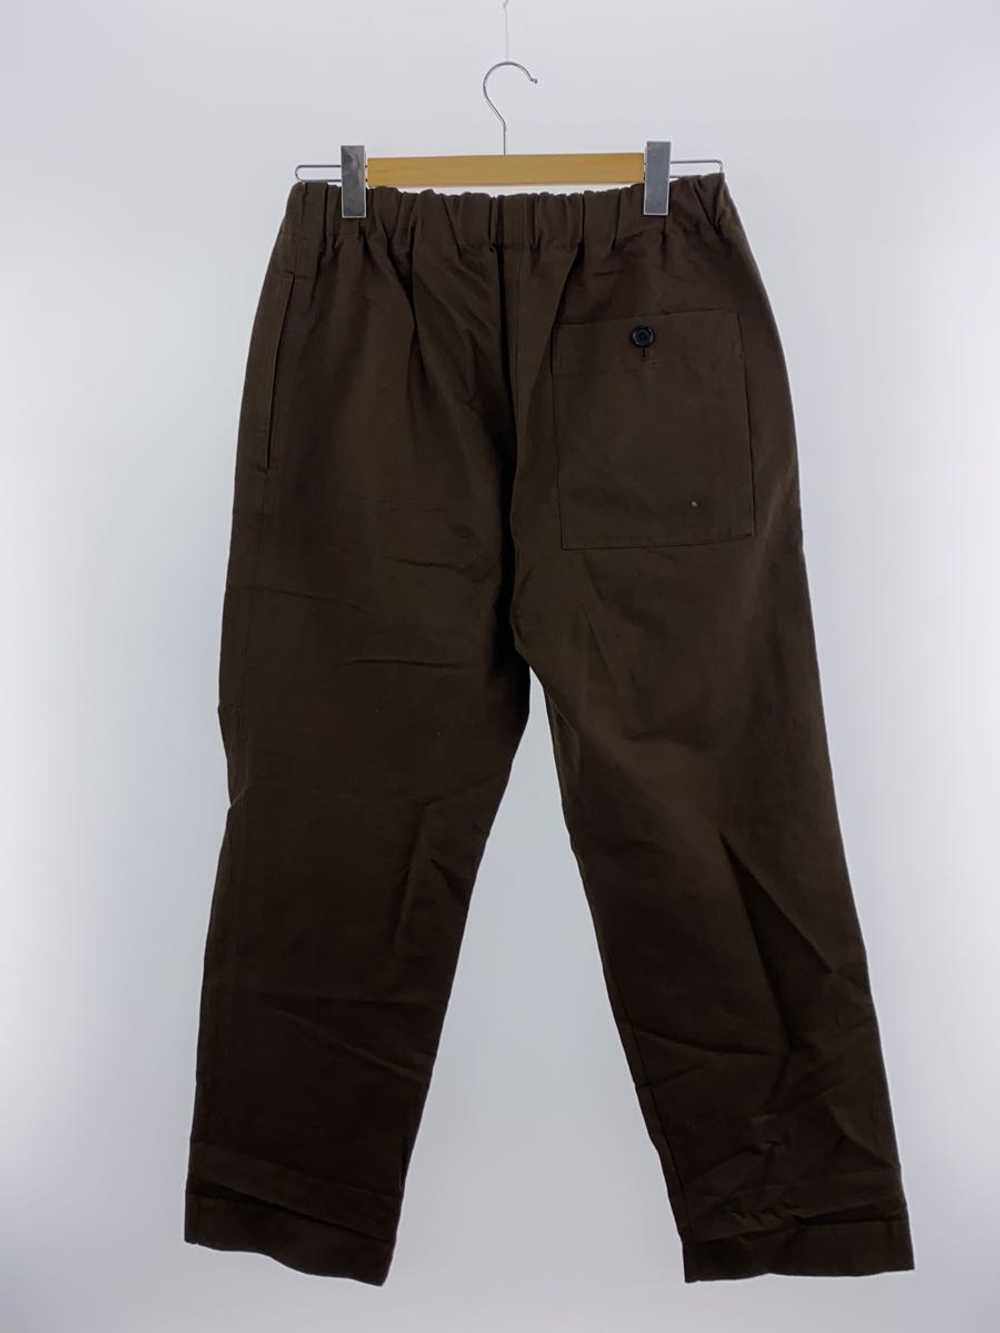 Men's Margaret Howell Dry Cotton Linen Pants/L/Co… - image 2